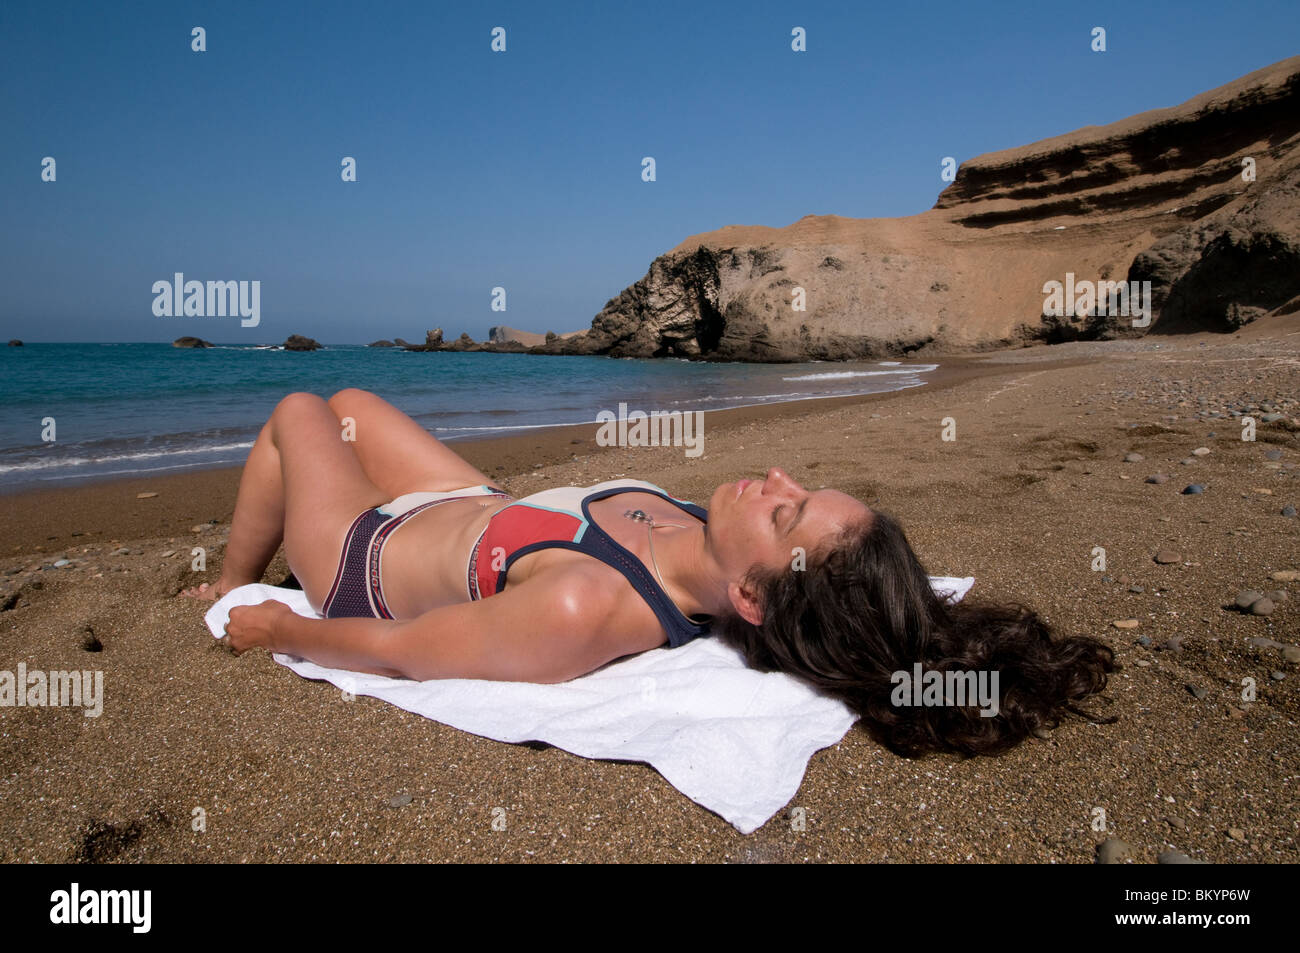 La donna a prendere il sole sulla spiaggia deserta in Perù Foto Stock